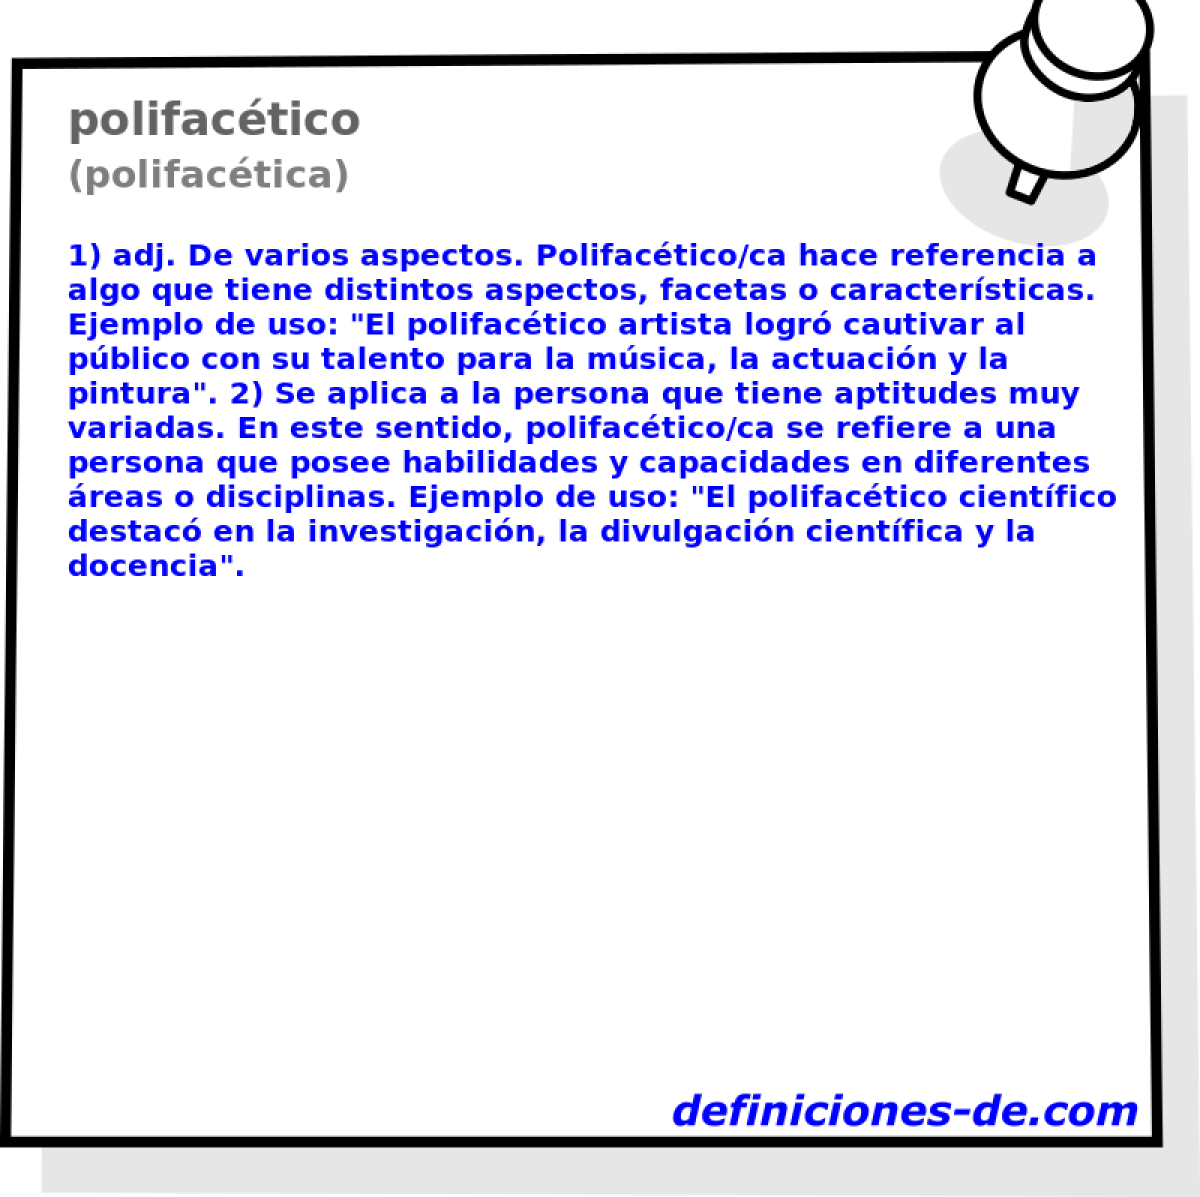 polifactico (polifactica)